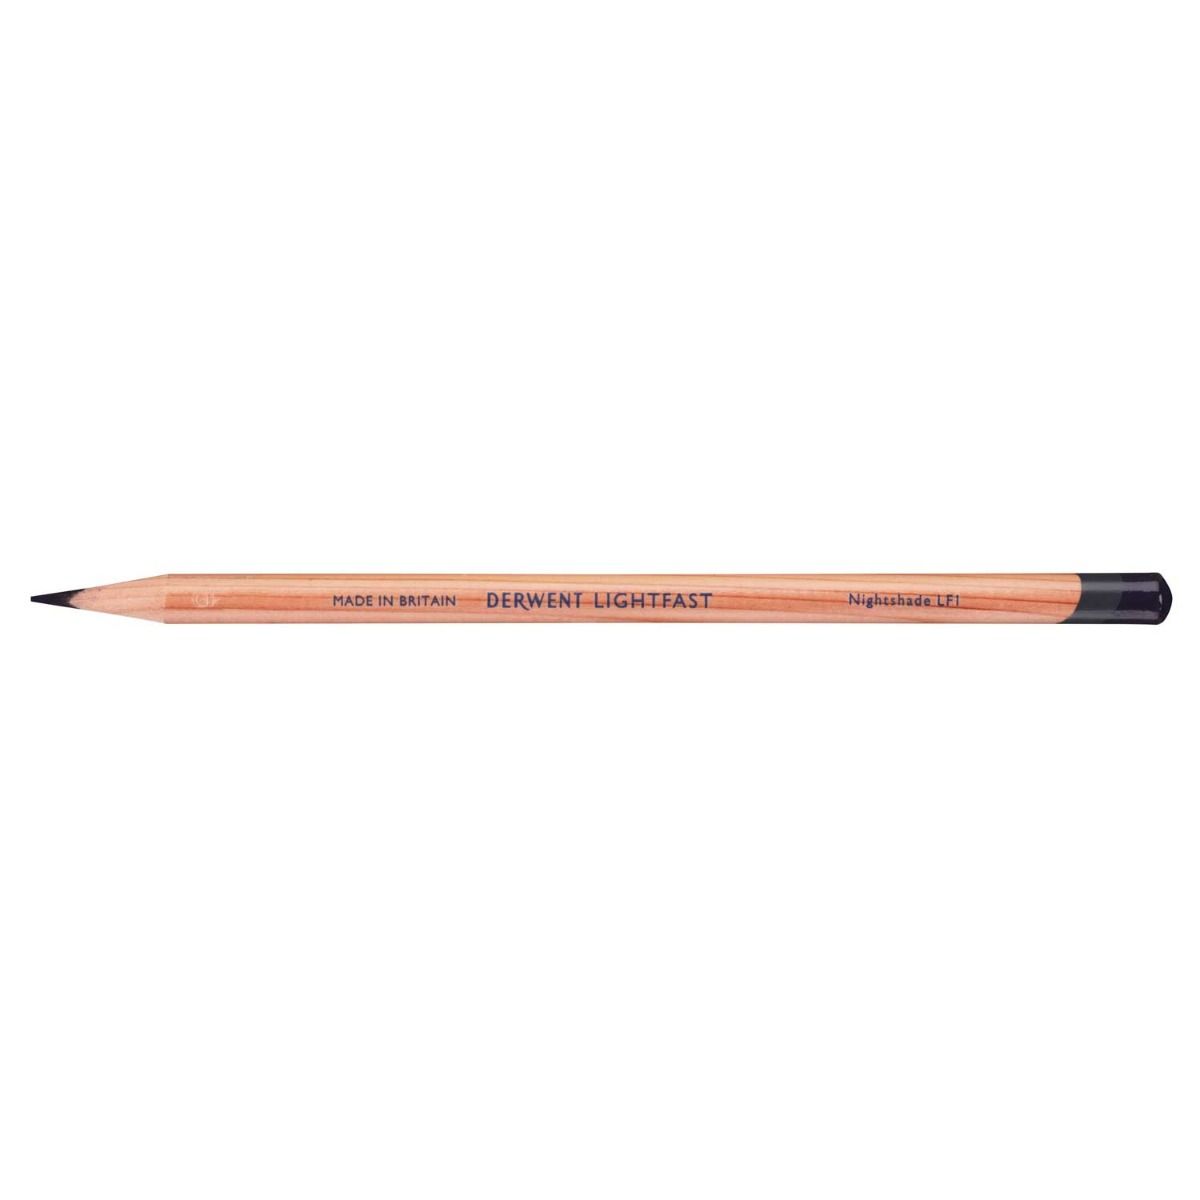 Derwent Lightfast Pencil Colour: Nightshade